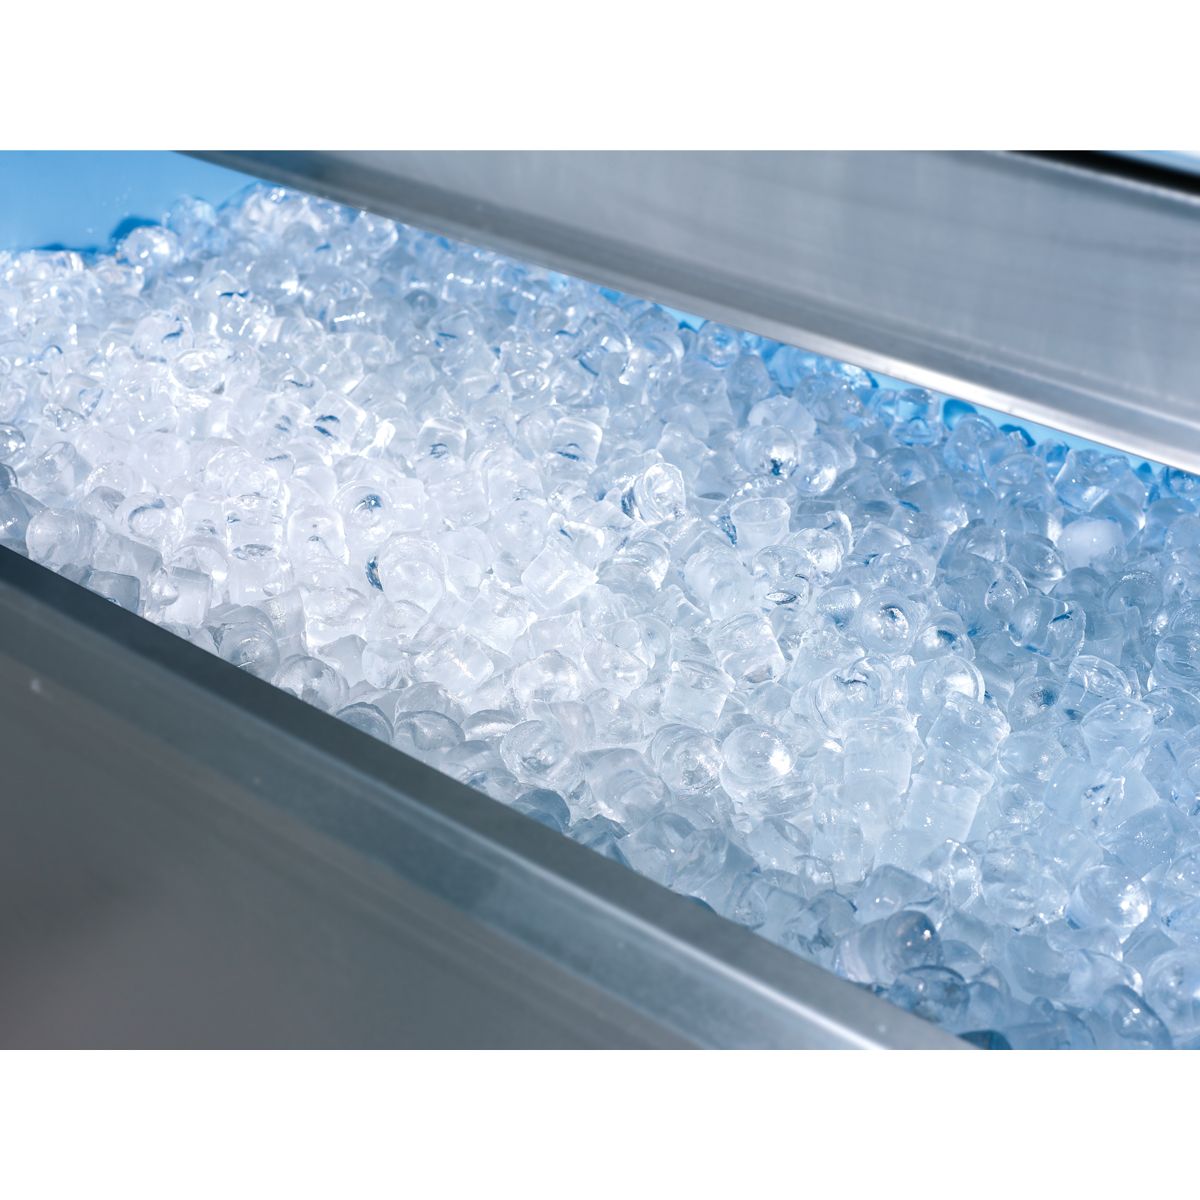 Máquina para hacer cubitos de hielo 127 kg en 24 hrs